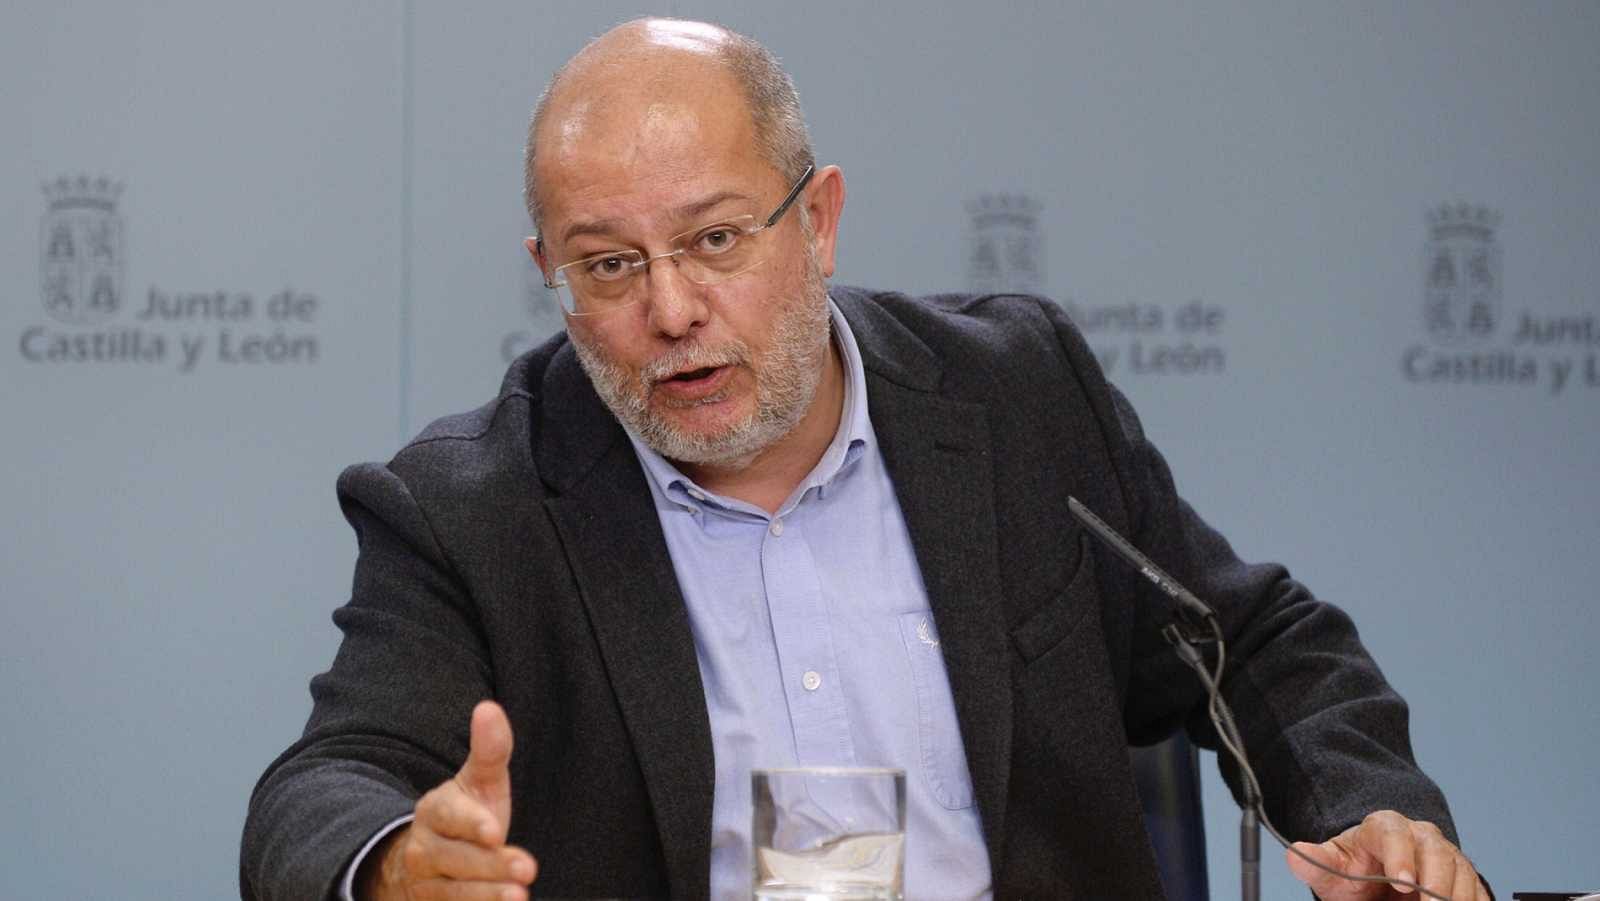  Francisco Igea presenta su renuncia como secretario regional de programas de Ciudadanos